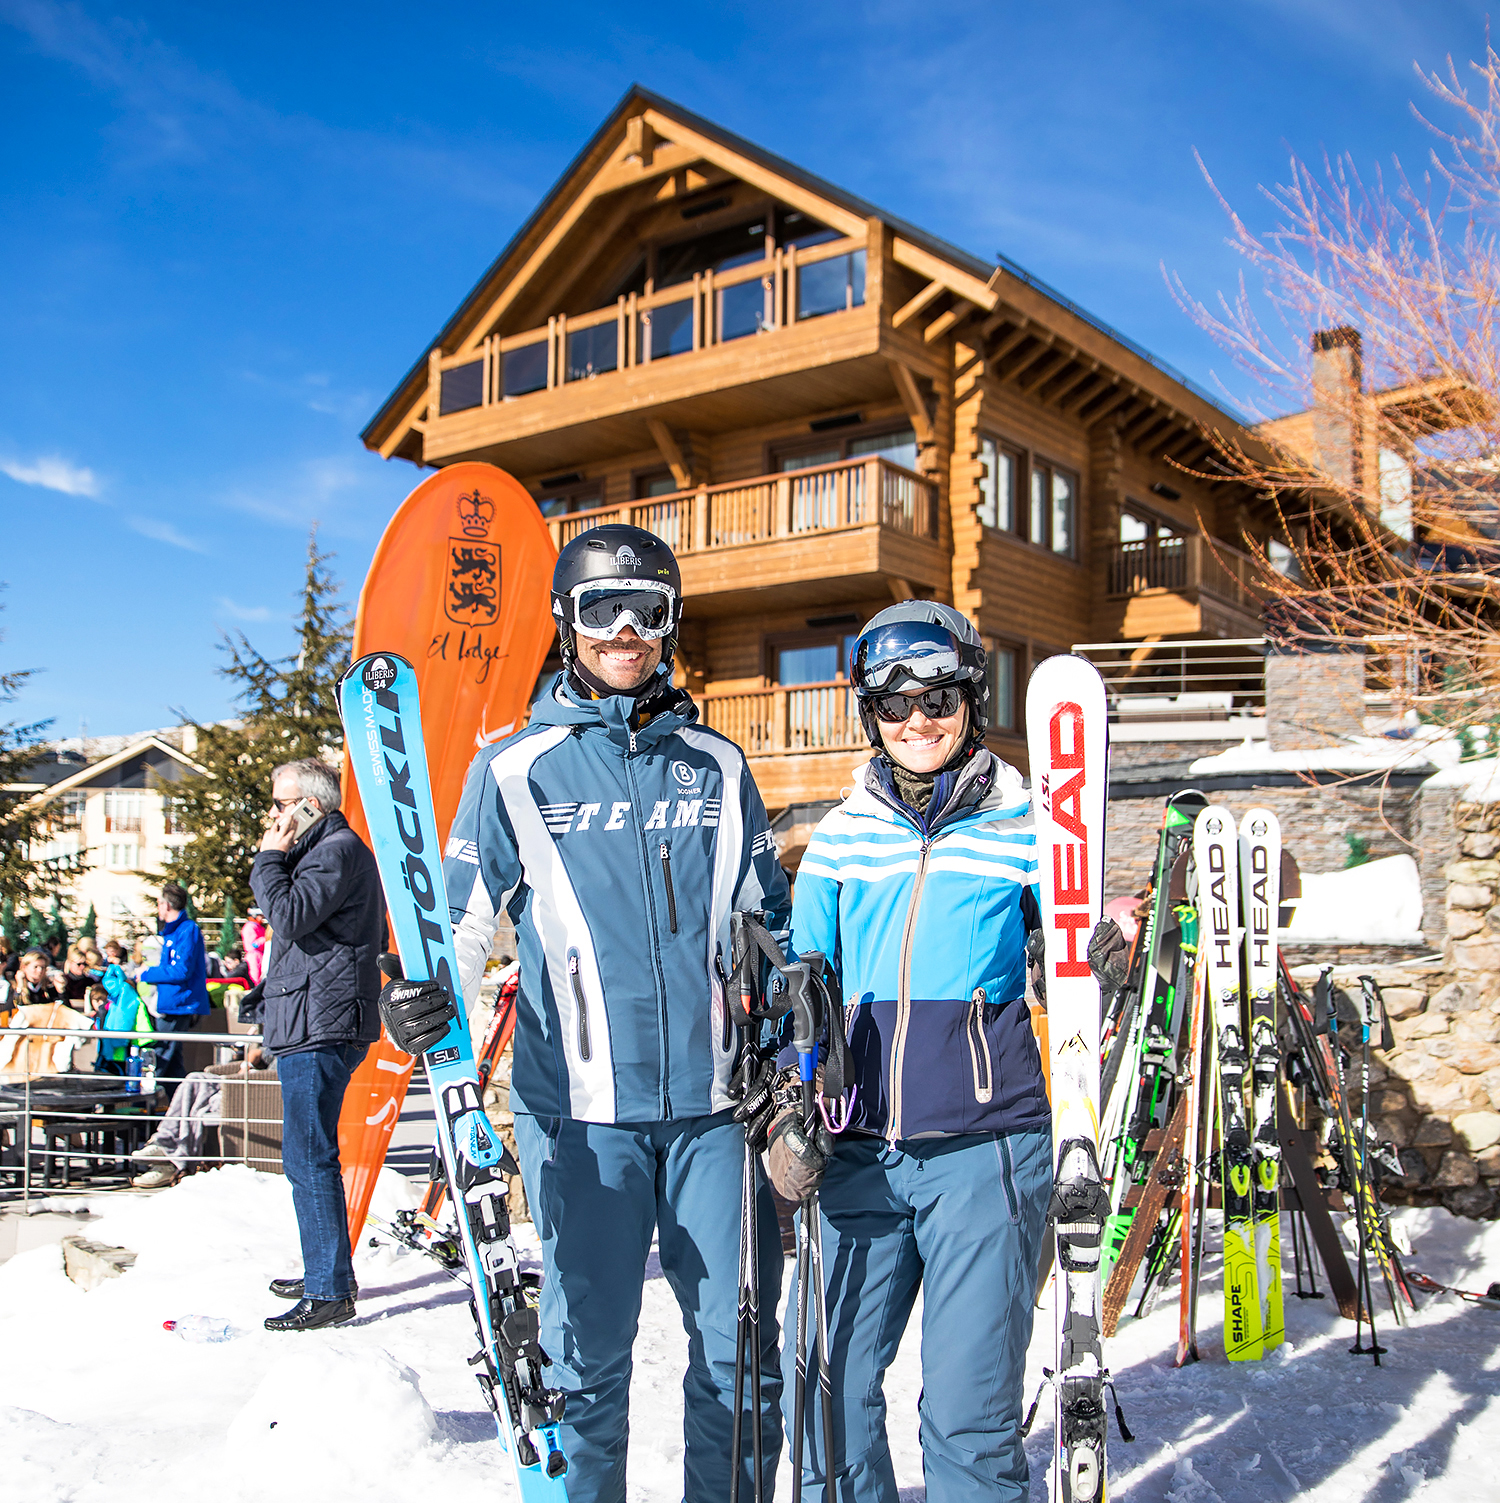 Skiing In El Lodge - El Lodge